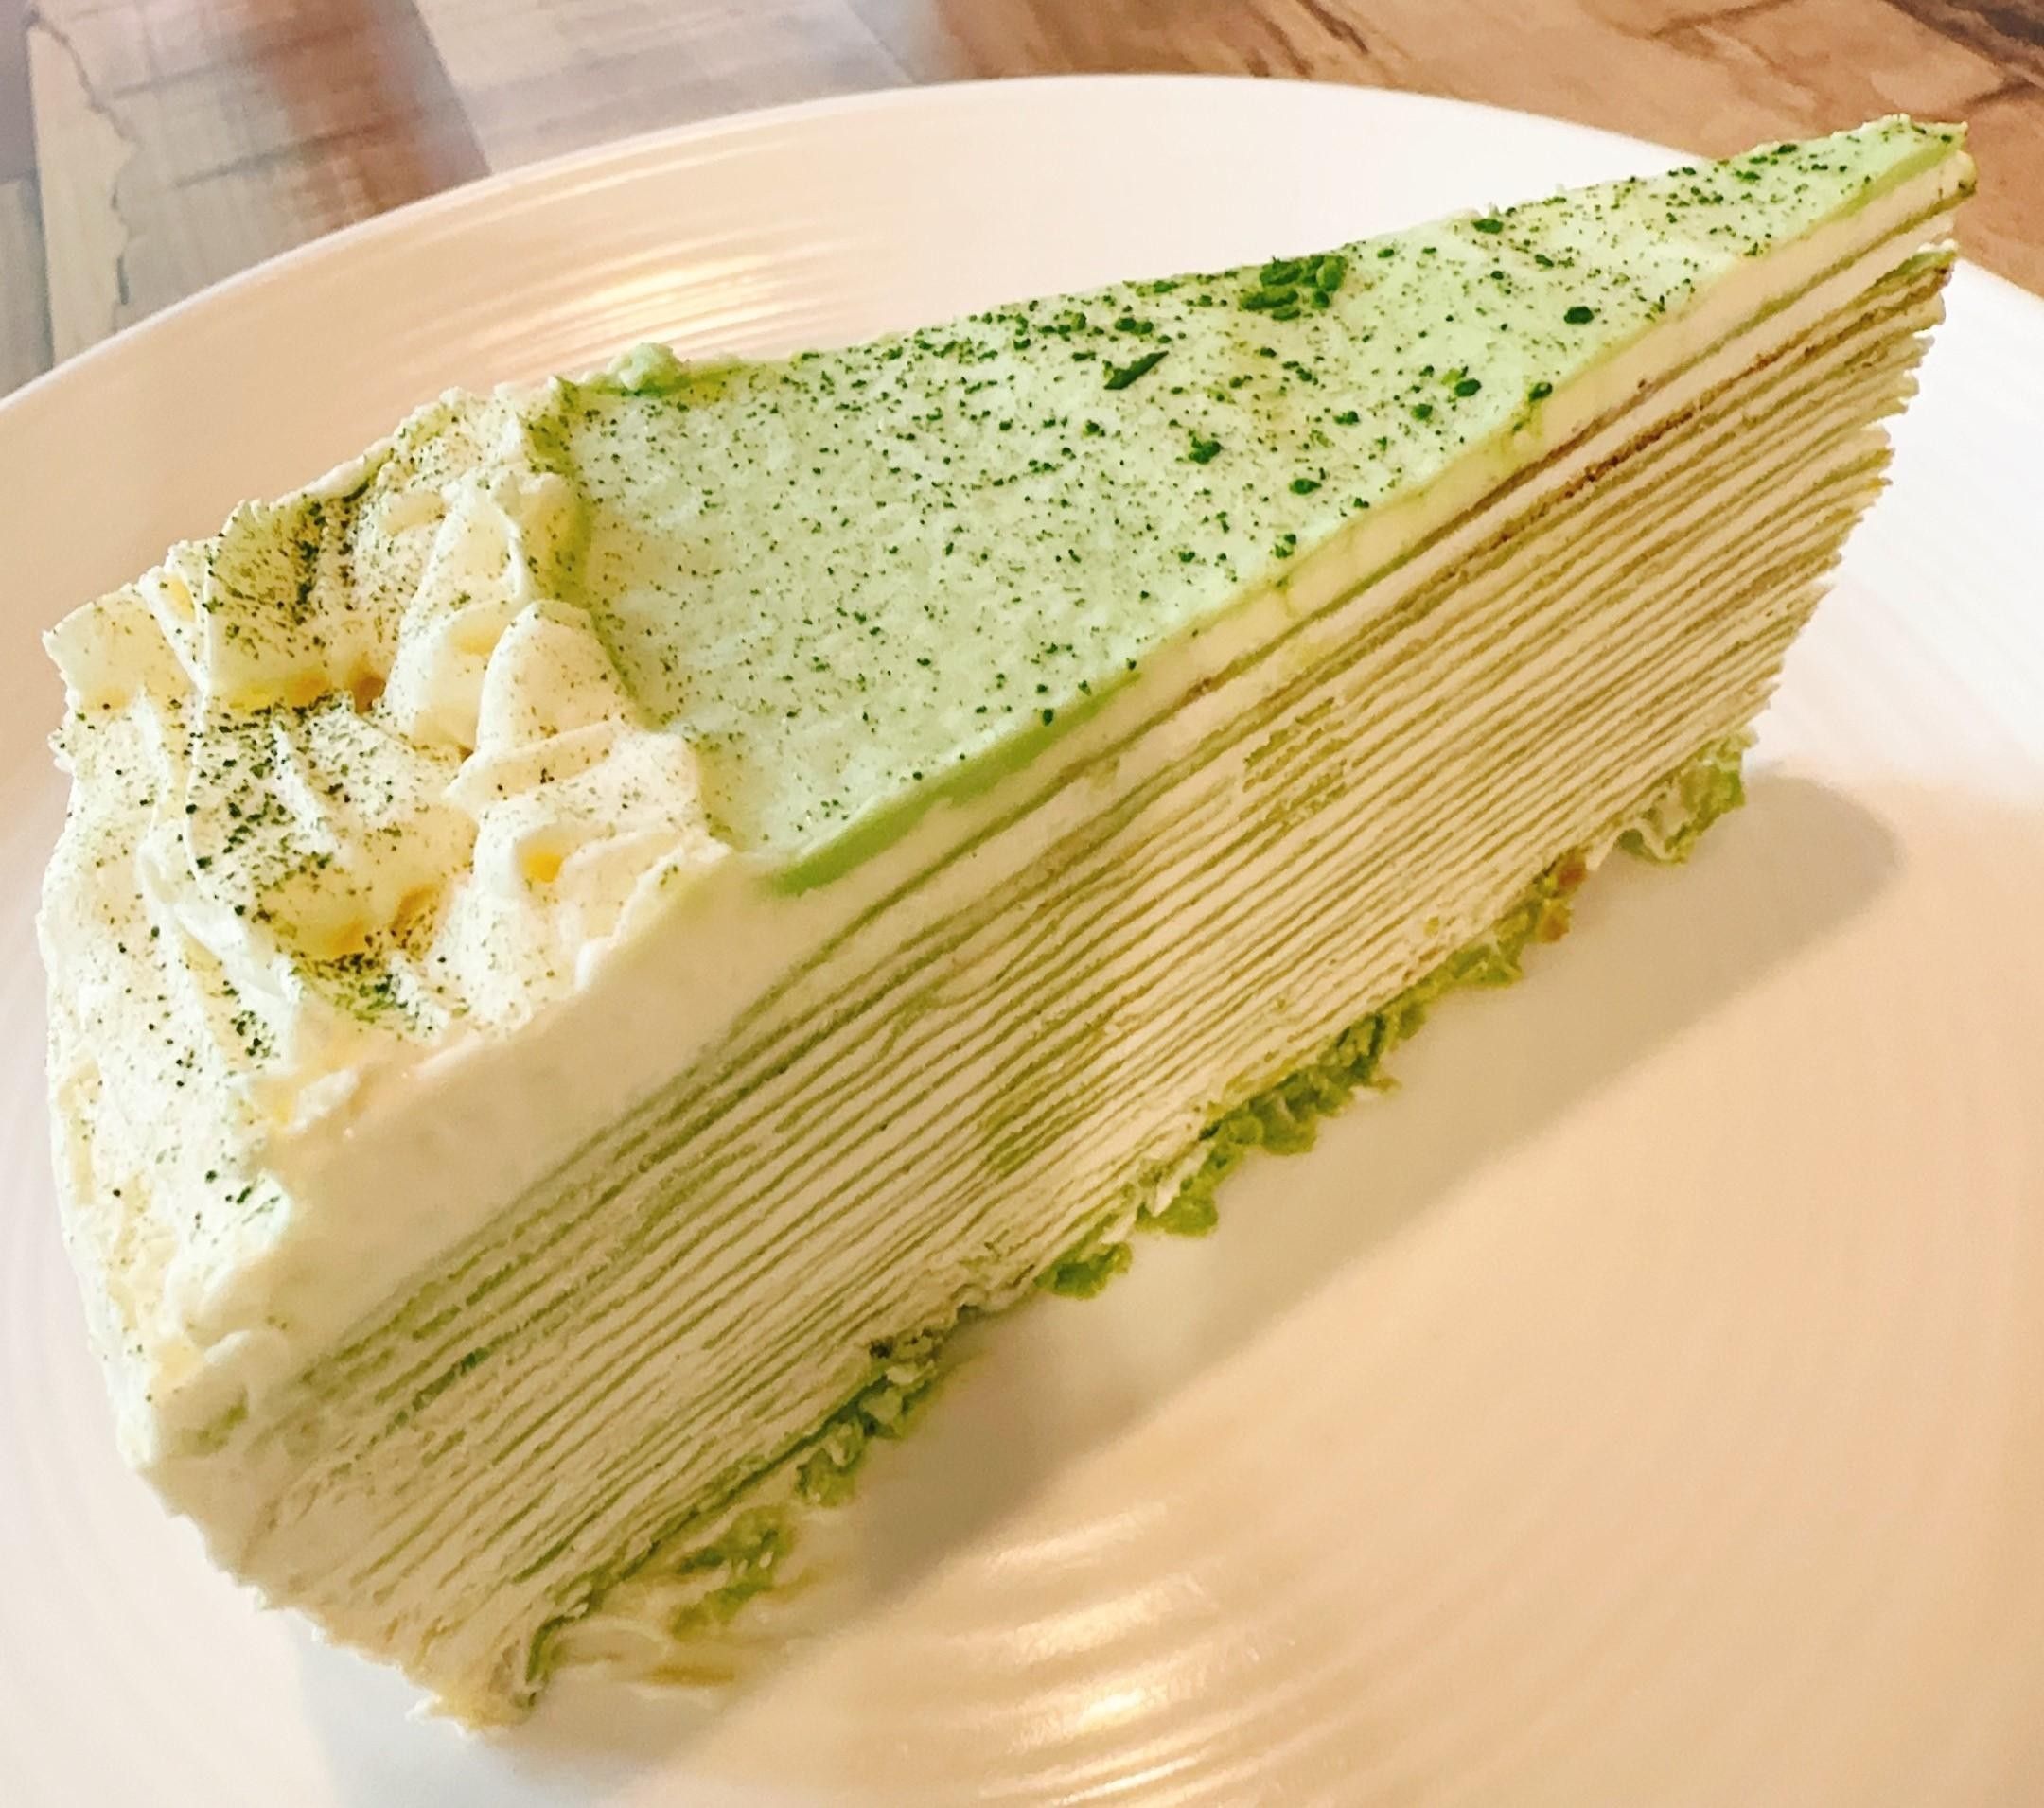 茉莉抹茶千层蛋糕 Homemade Jasmine Matcha Layer Cake (1pc)